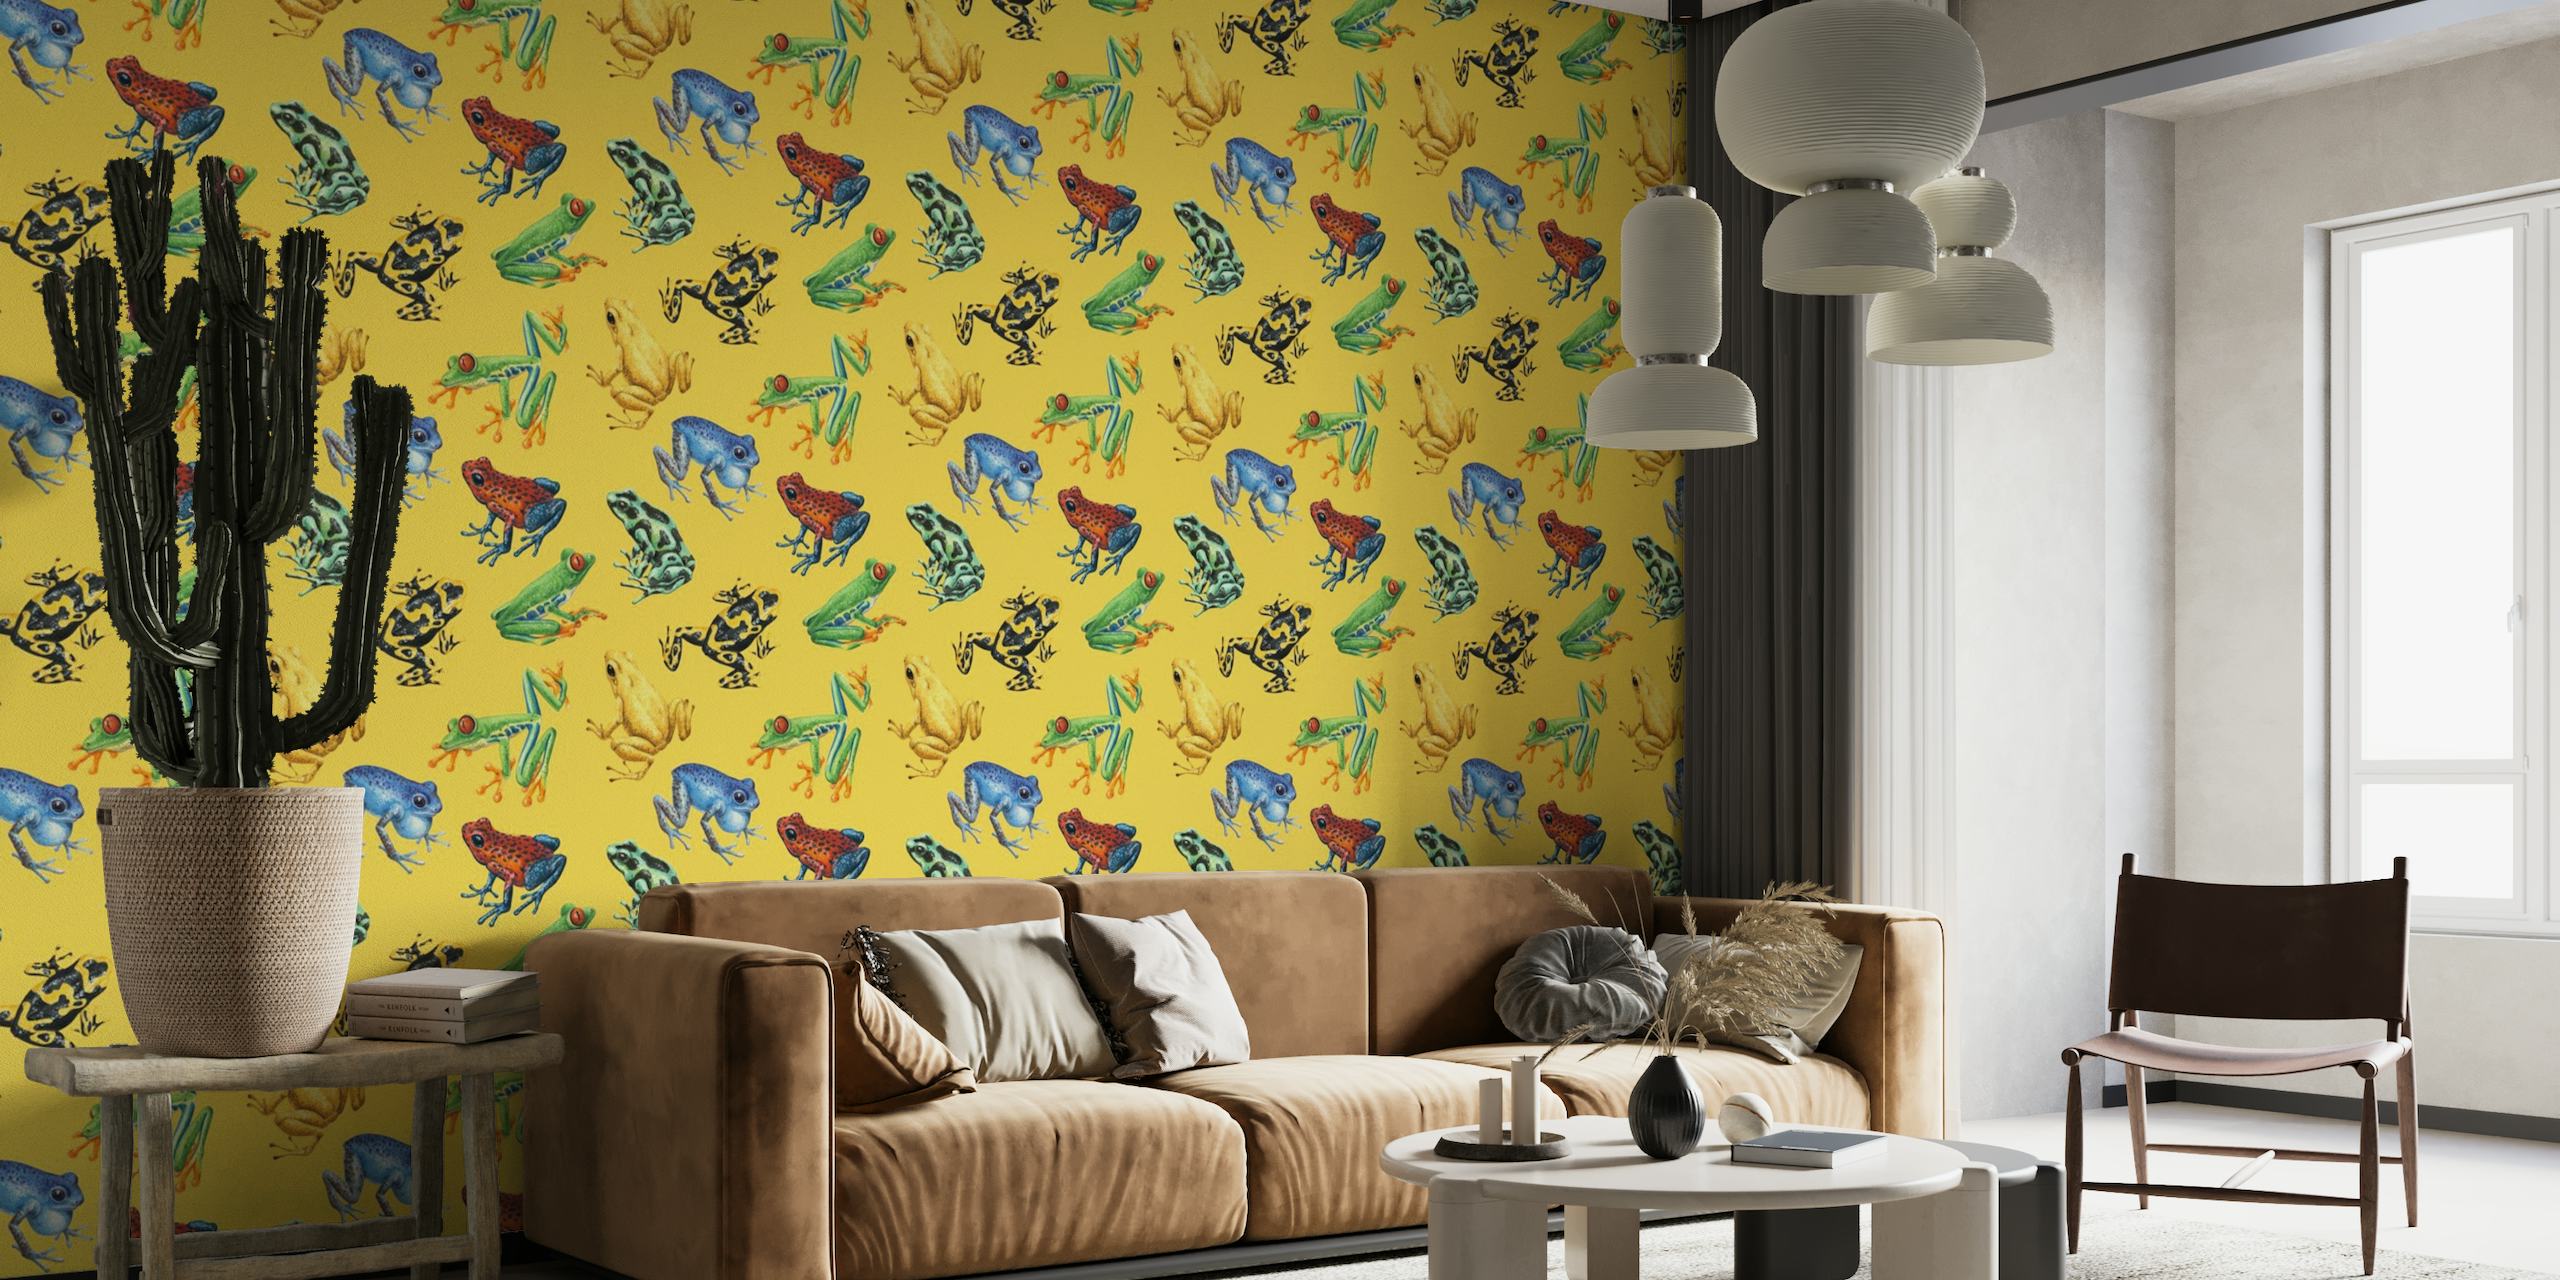 Kleurrijke kikkers geïllustreerd op een felgele muurschildering als achtergrond